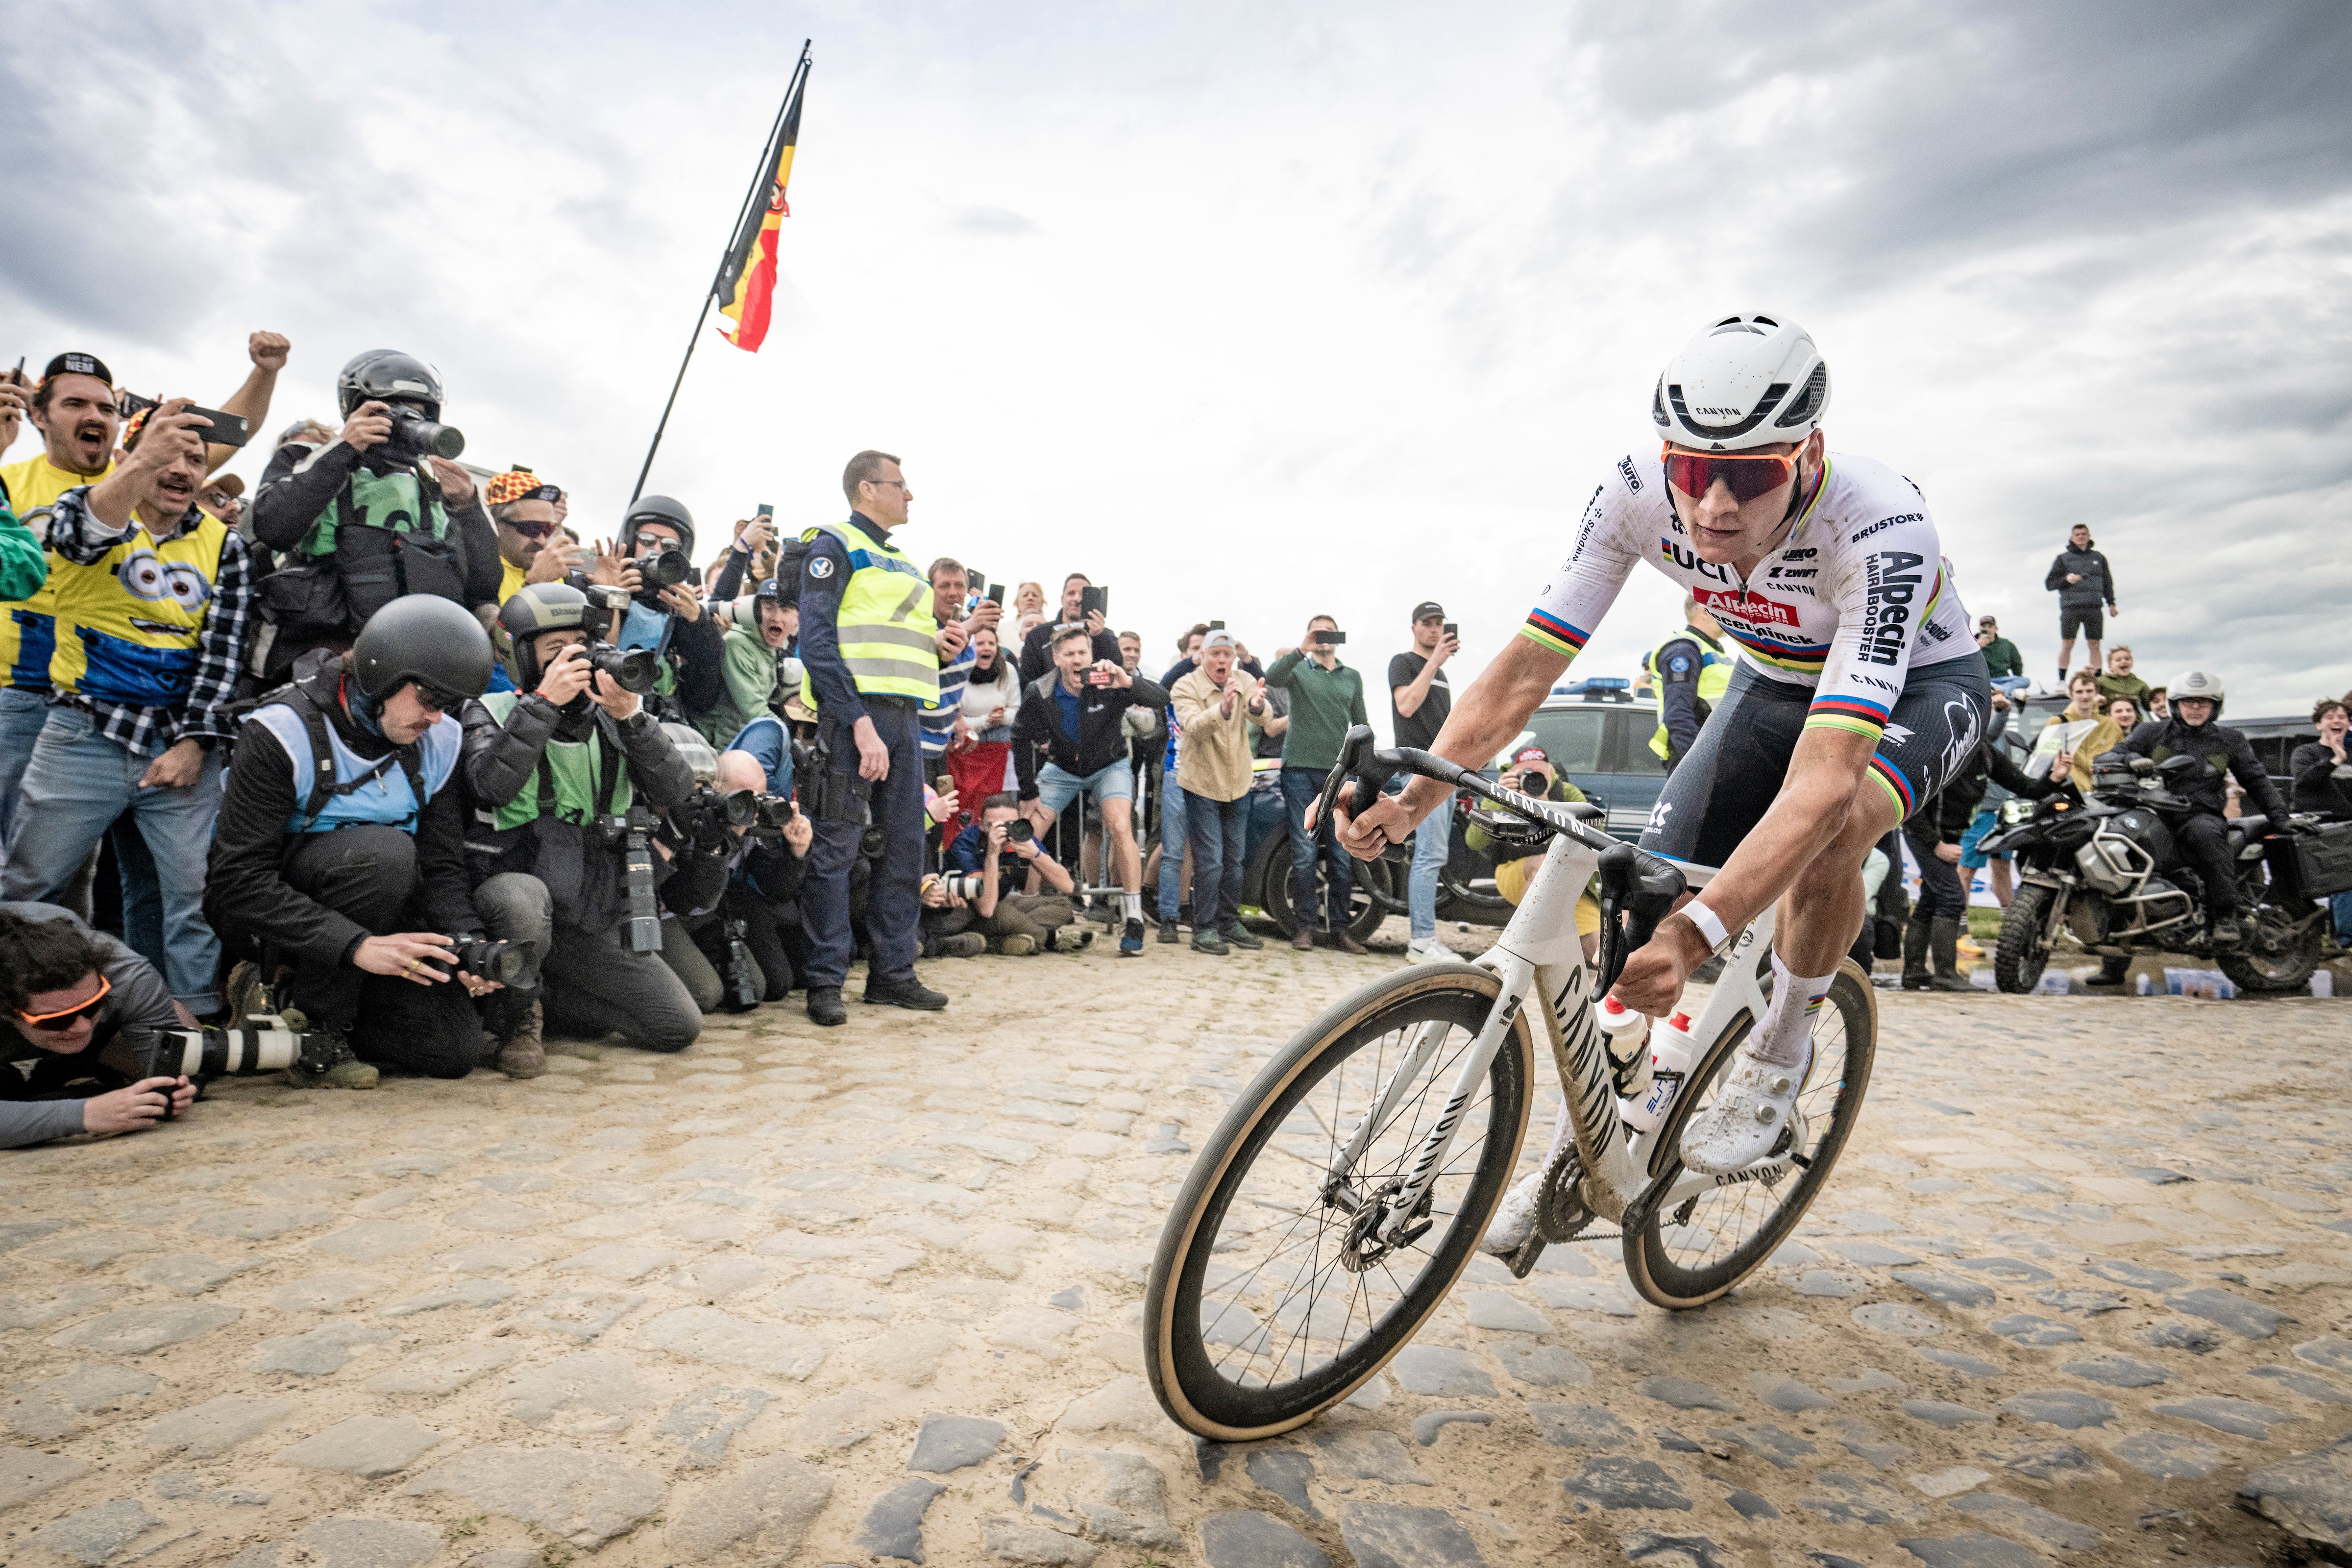 Van der Poel en route to winning this year’s Paris-Roubaix